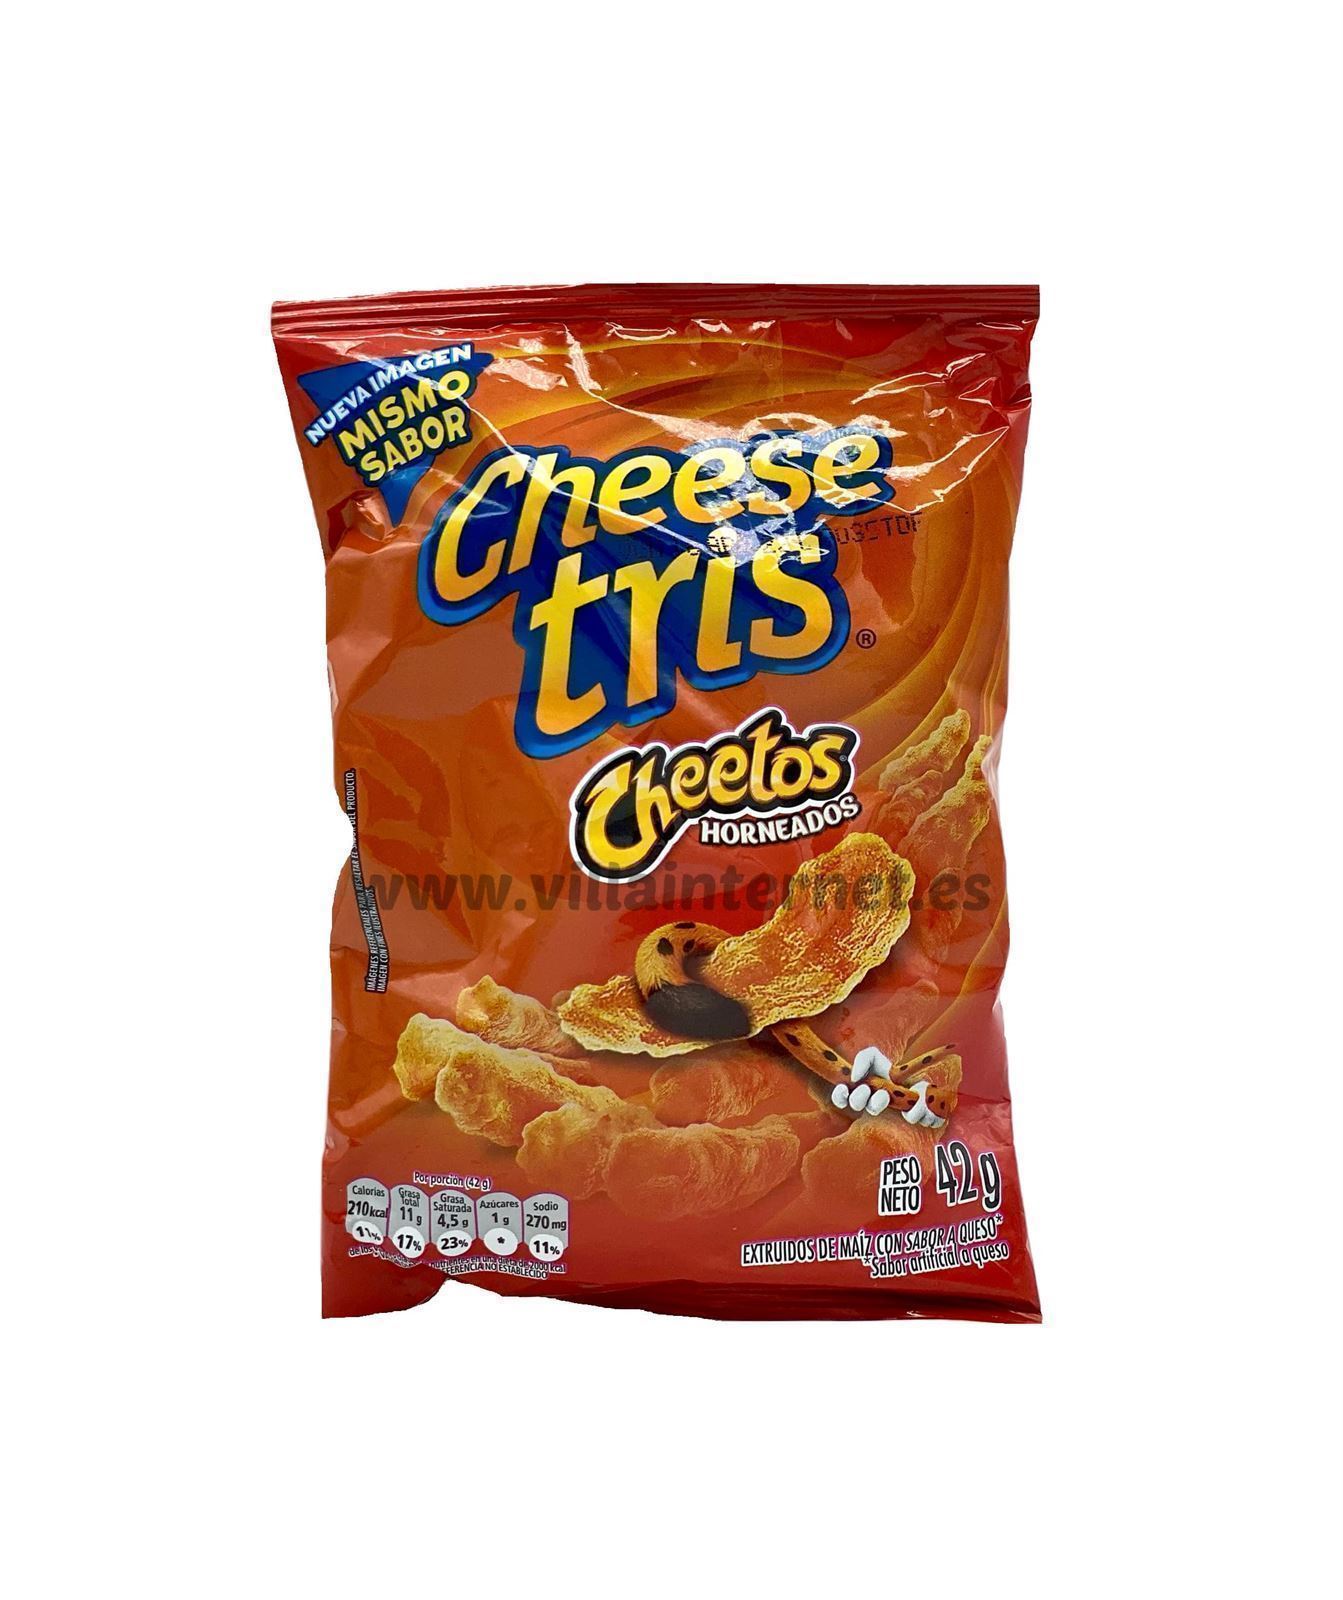 Cheese Tris sabor cheetos horneados 42g - Imagen 1